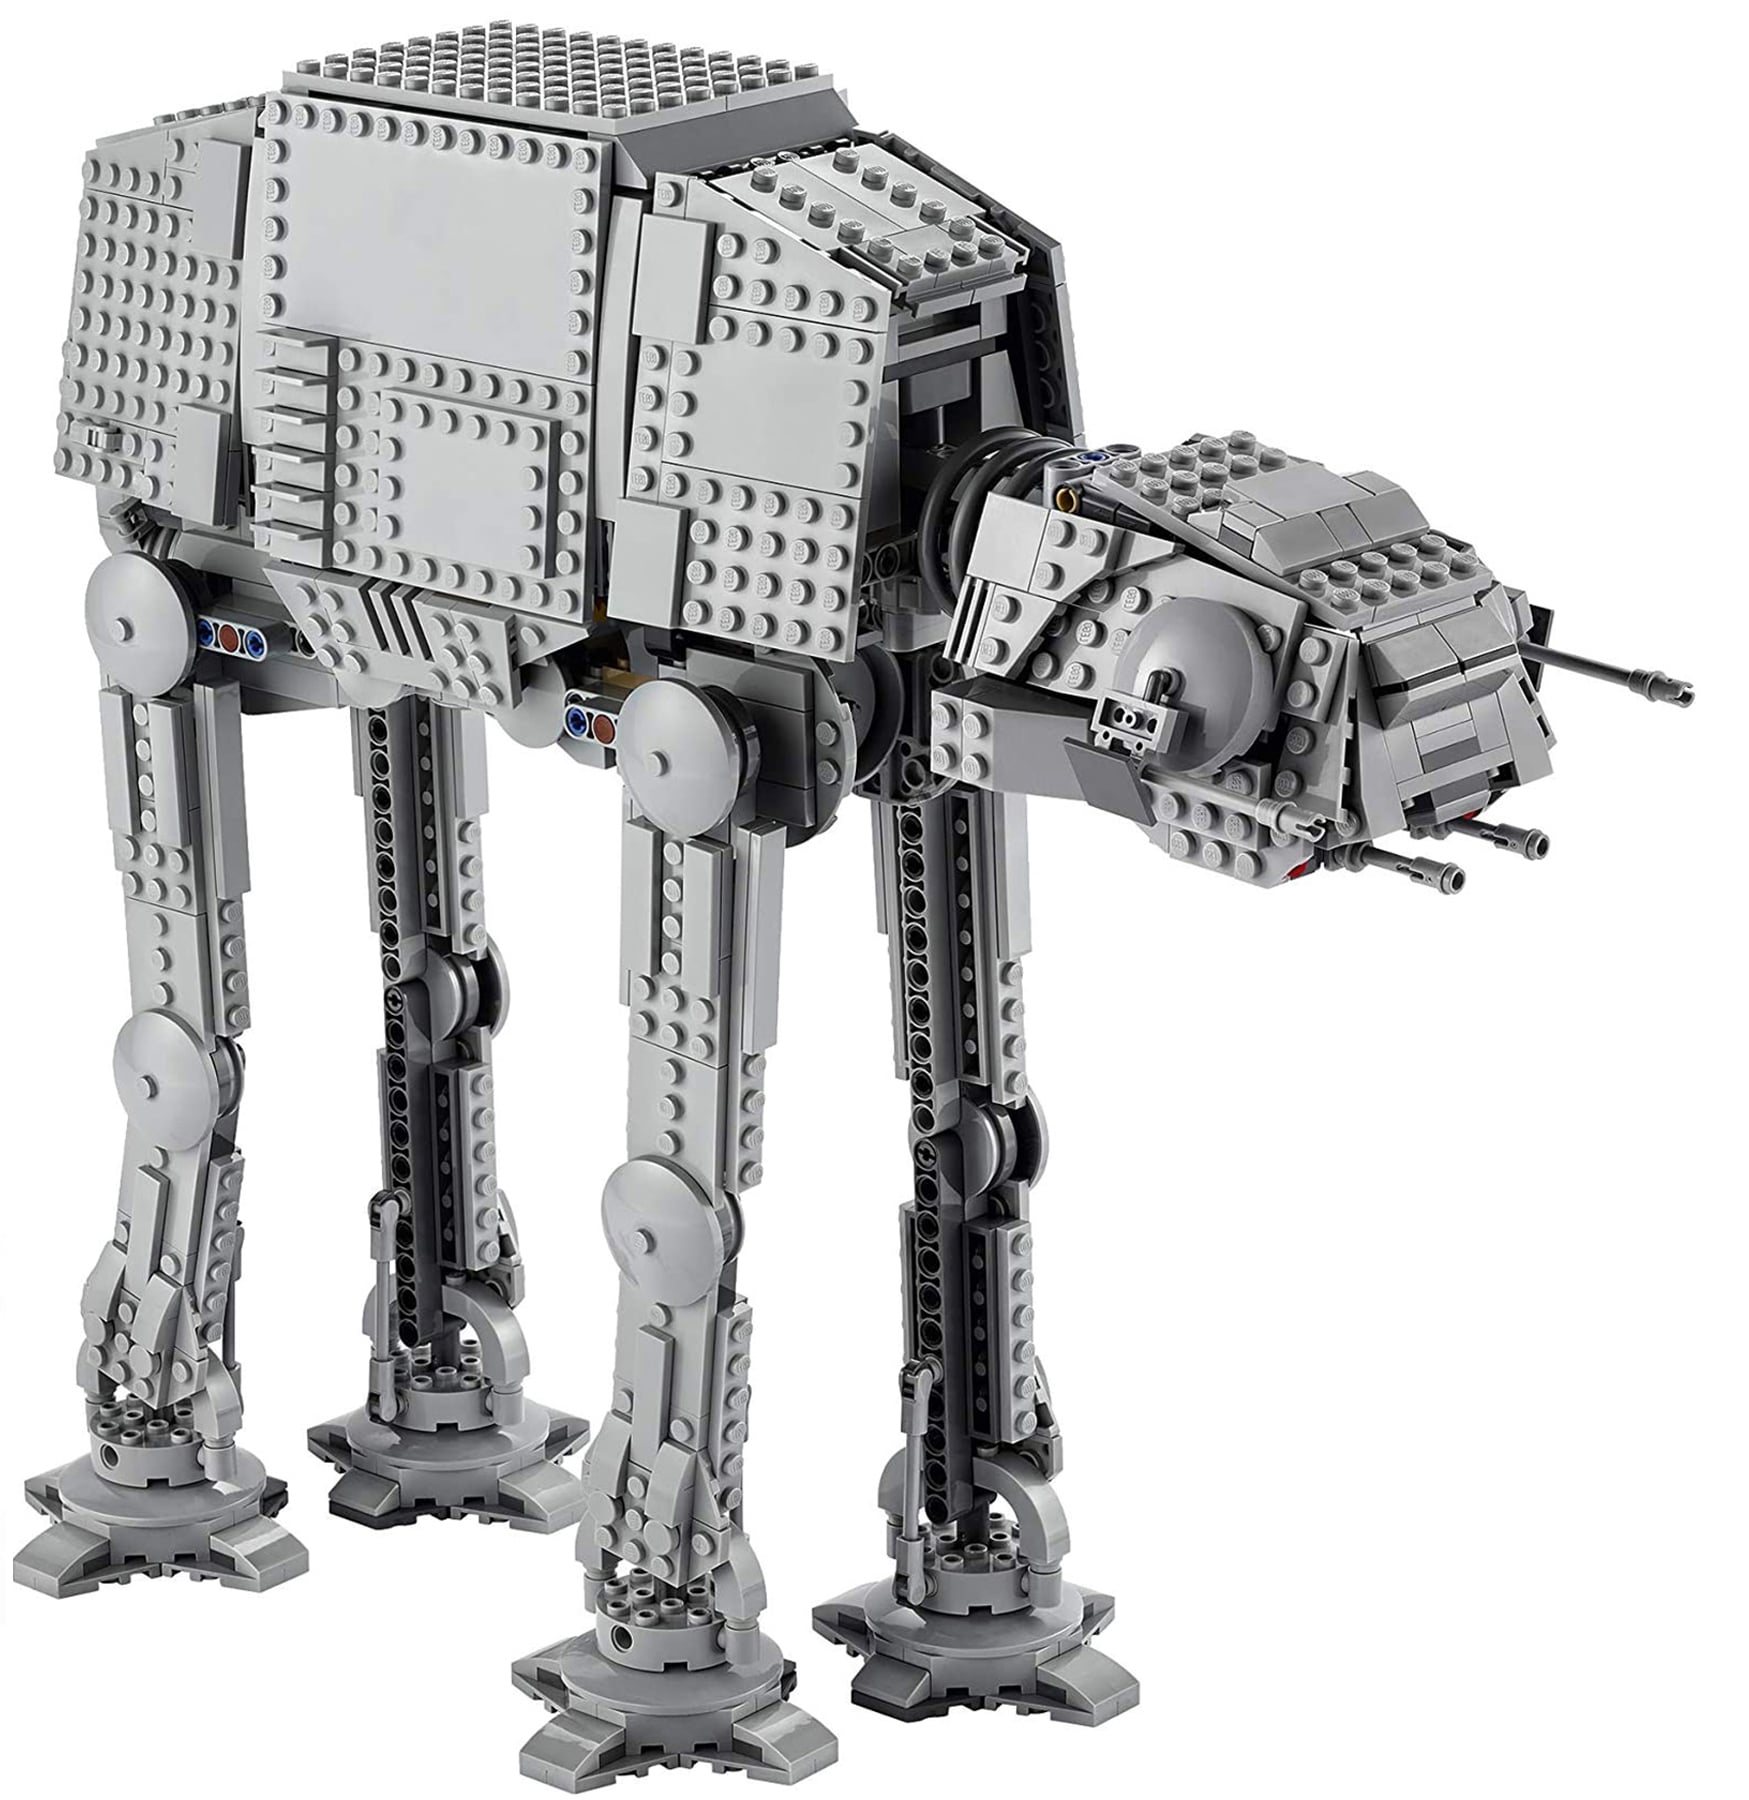 LEGO Star Wars 75288 AT-AT